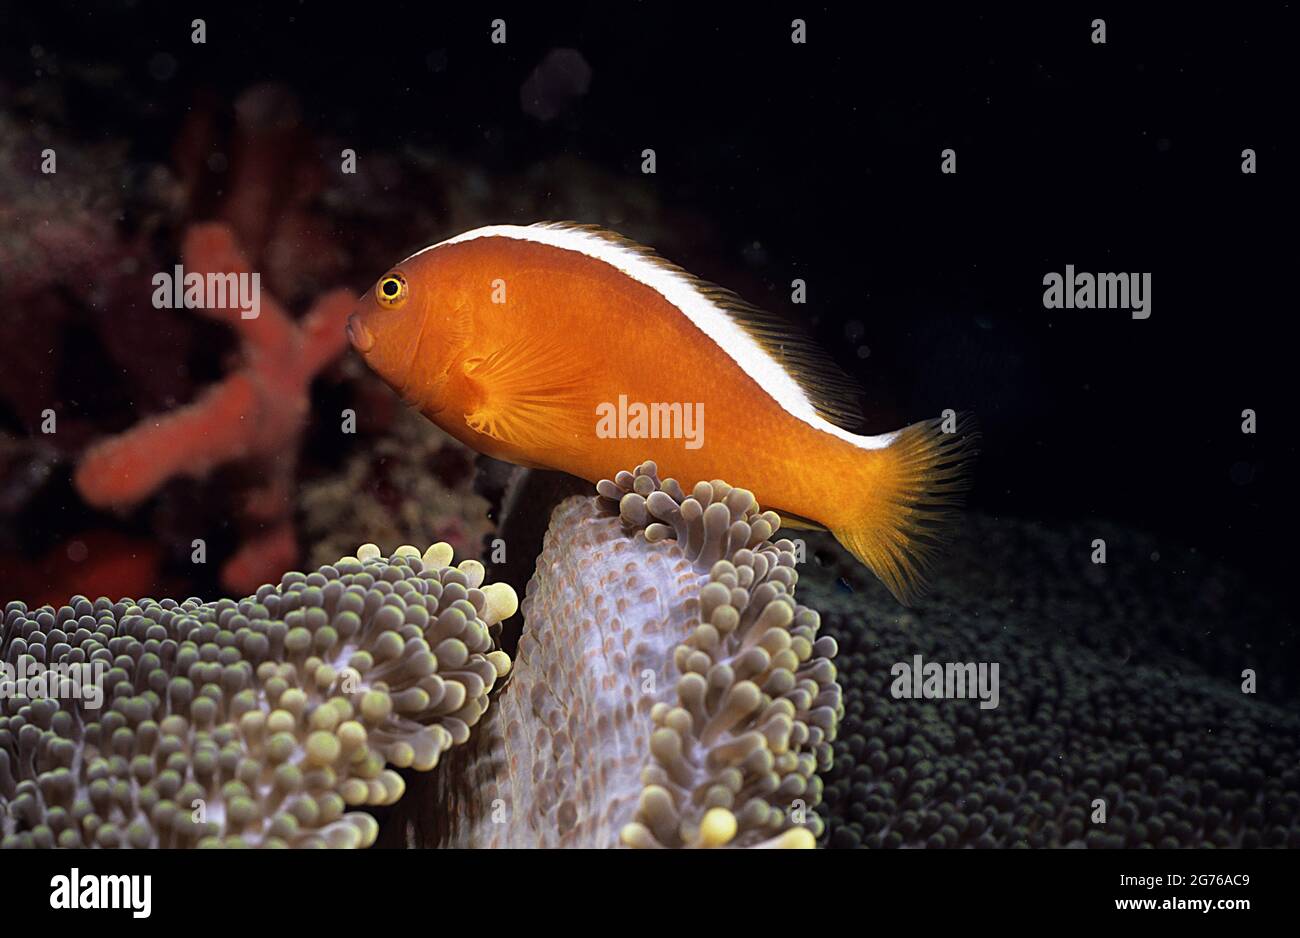 Anemonefish arancione sull'anemone ospite, Borneo Foto Stock